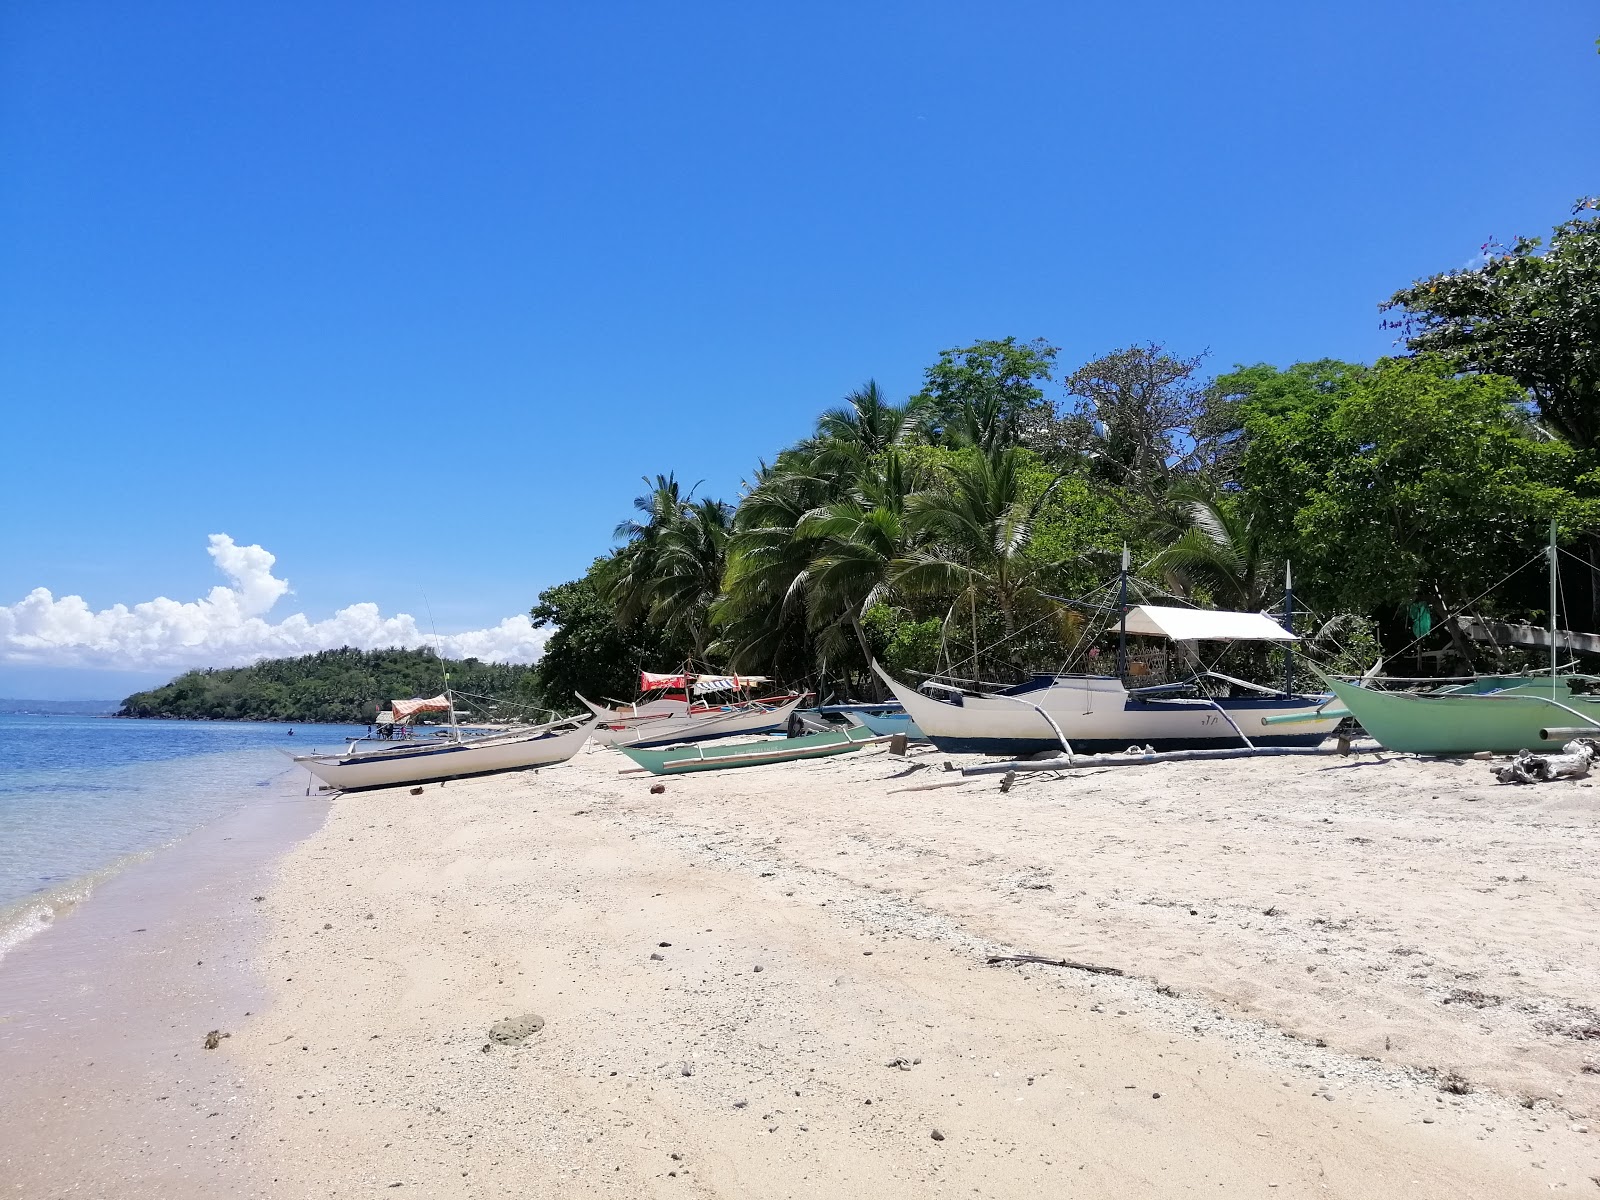 Zdjęcie Pili Beach - popularne miejsce wśród znawców relaksu